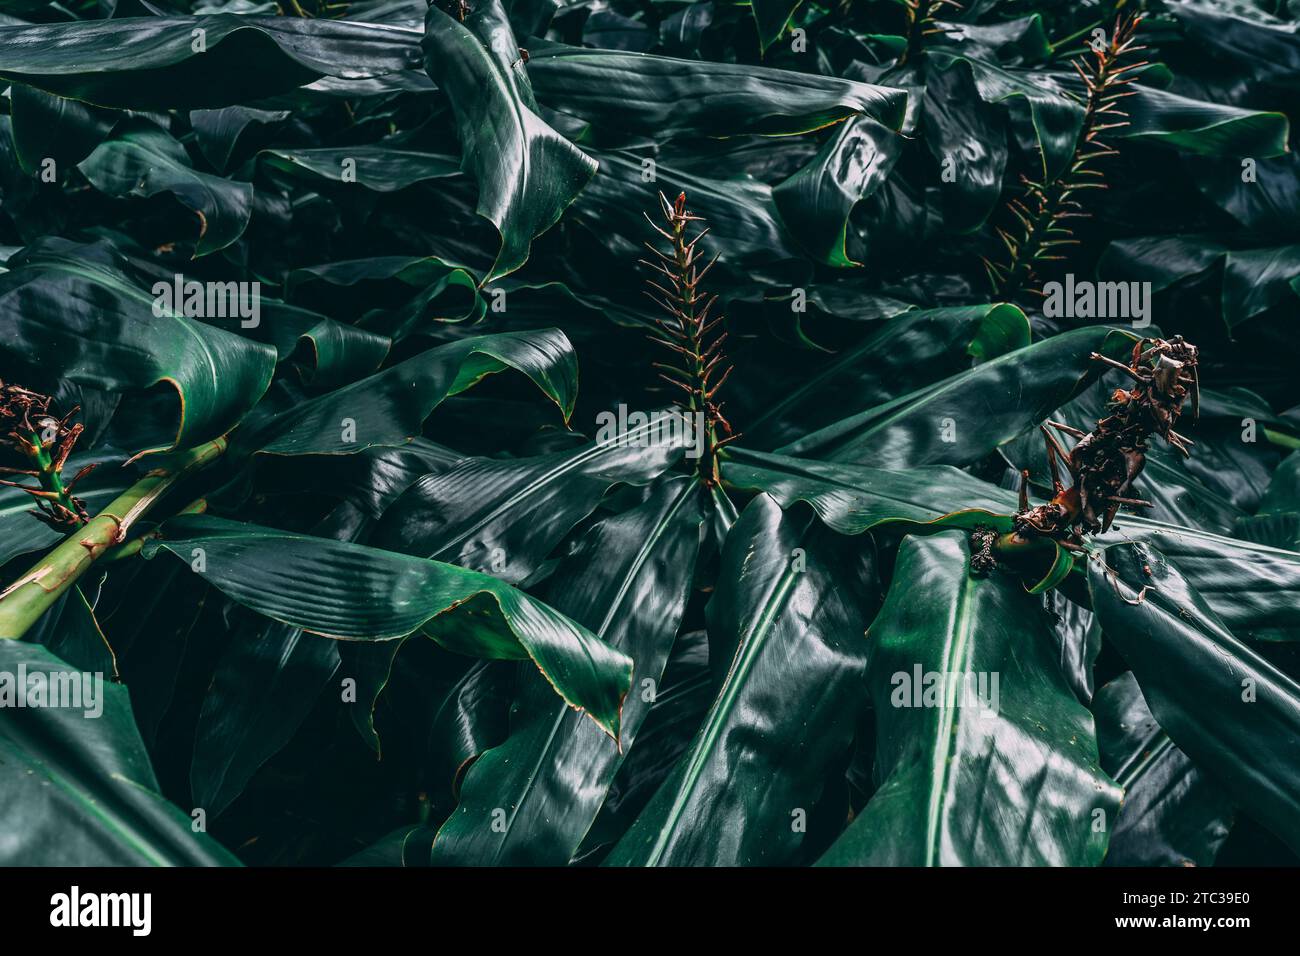 Üppig und fesselnd: Eine dunkelgrüne Pflanze zeigt ein atemberaubendes Muster und schafft eine visuell bezaubernde Komposition voller Vitalität. Stockfoto